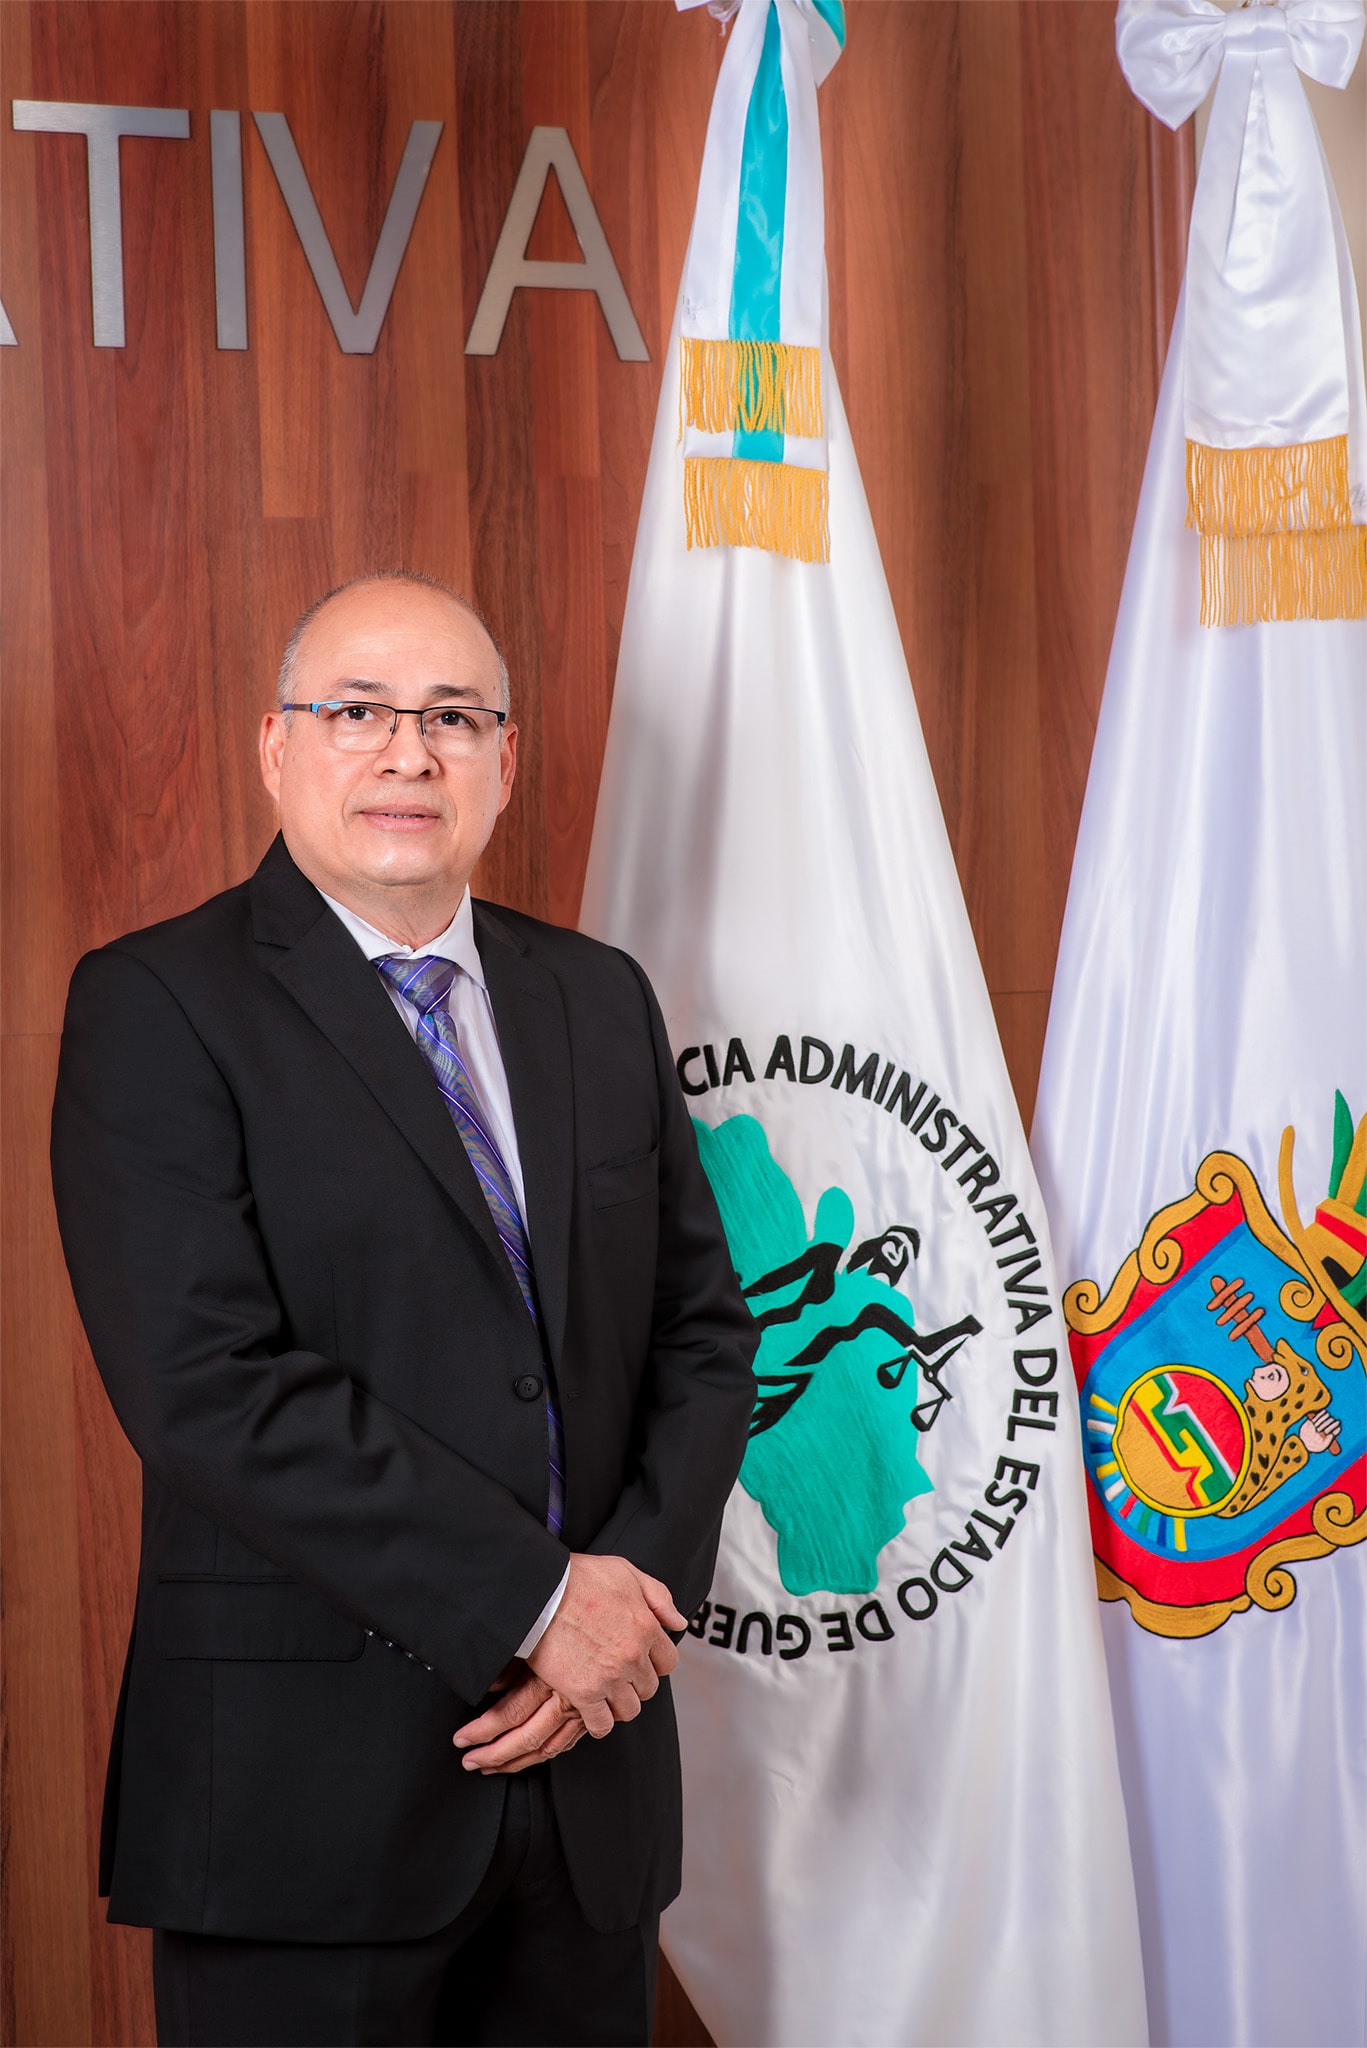 PONENCIA – Tribunal de Justicia Administrativa del Estado de Guerrero